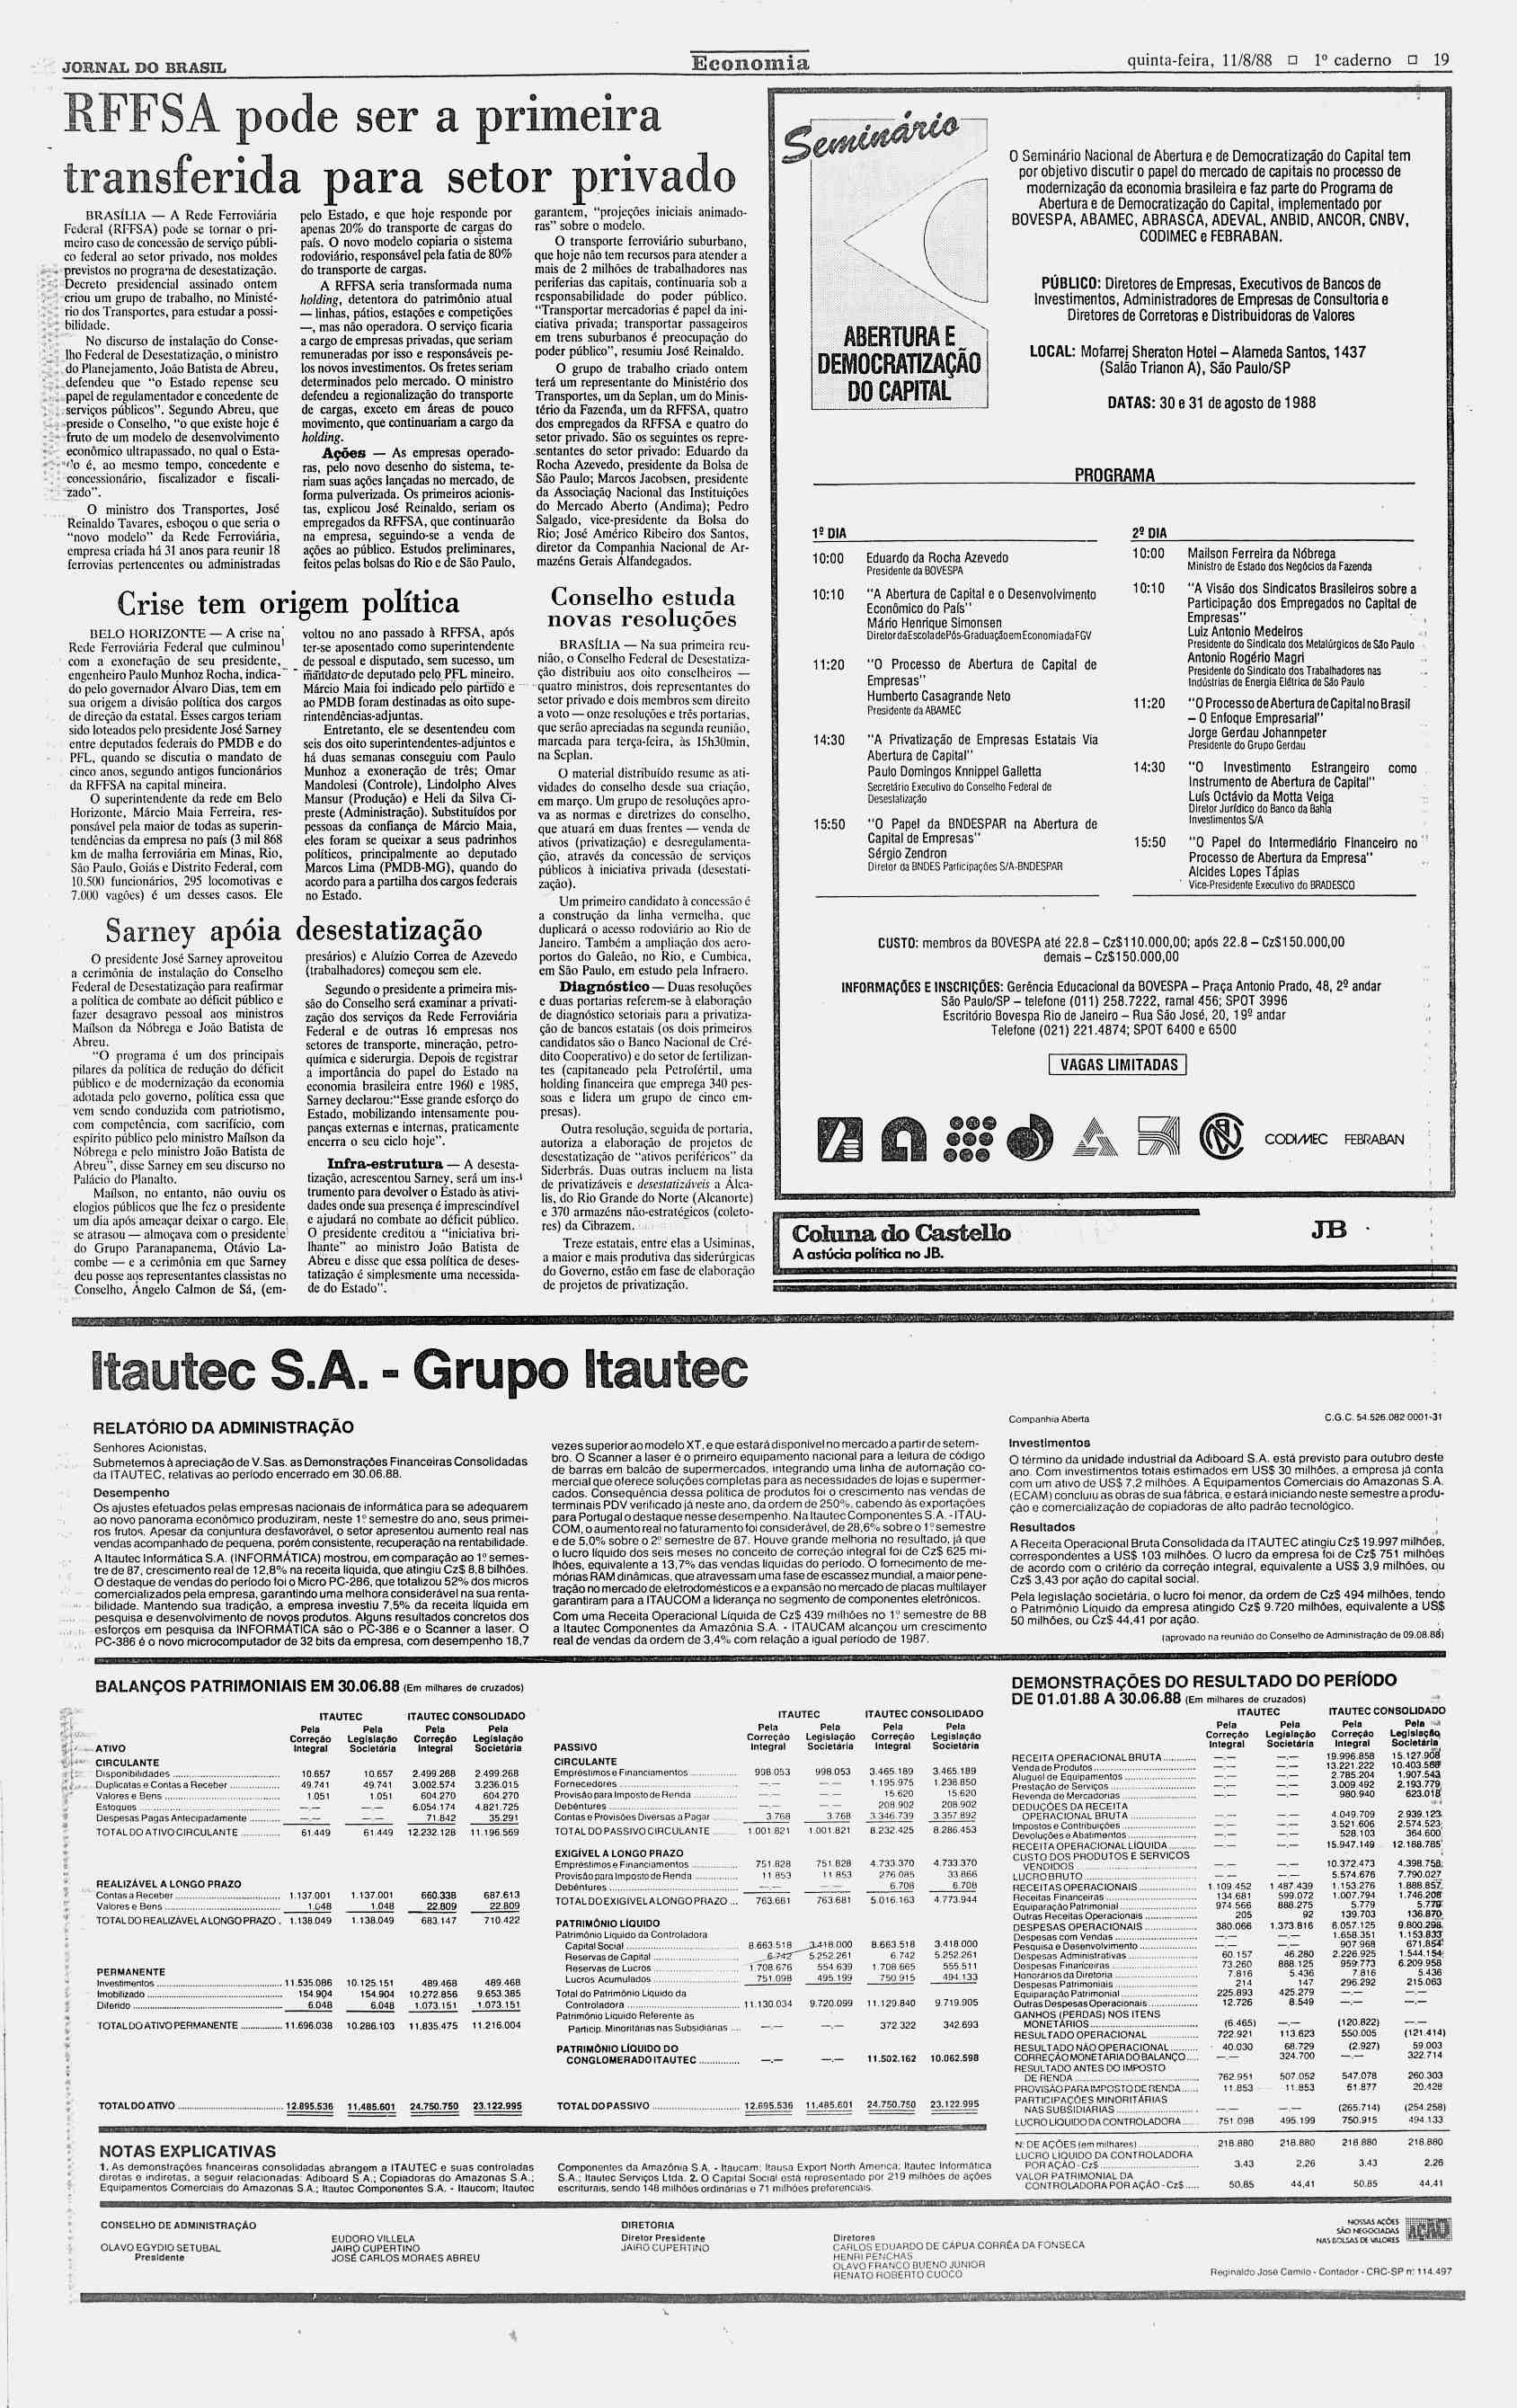 i JORNAL DO BRASL Economia quinta-feira, 11/8/88? o caderno? 19 RFFSA pode ser defendeu "o que Estado repense seu papel de regulamentador e concedente de serviços públicos".